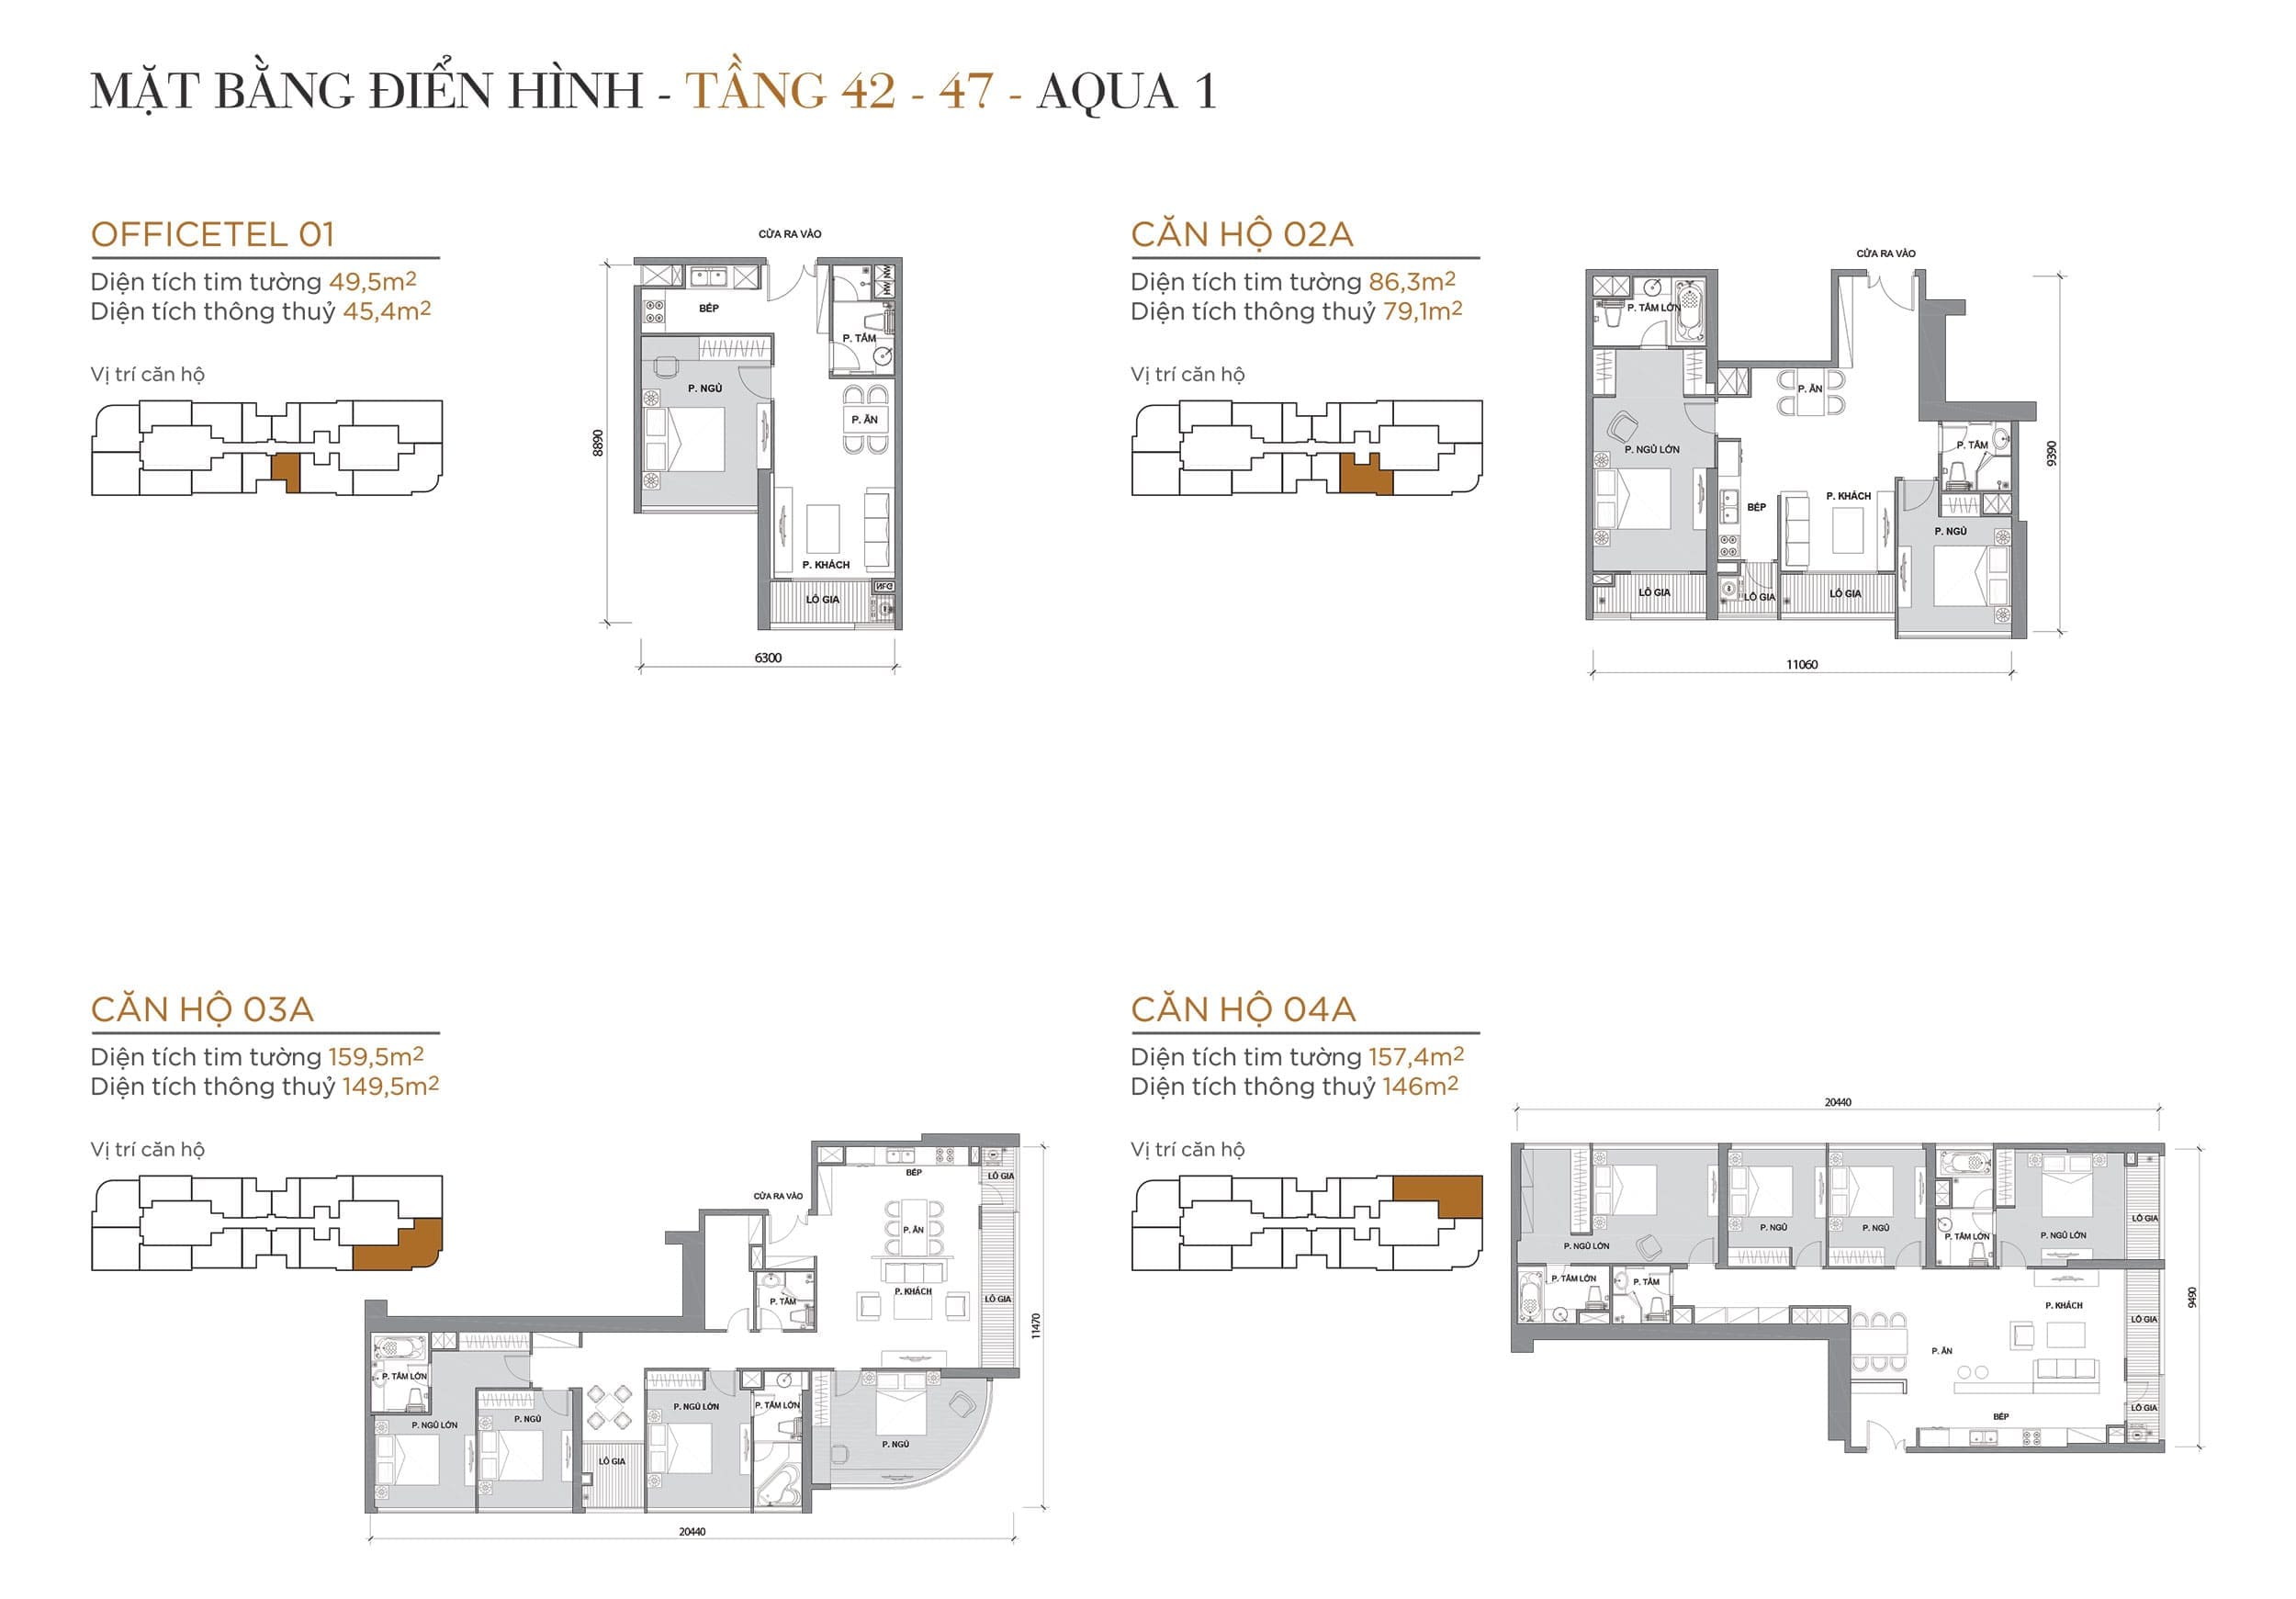 Layout căn hộ tầng 42 đến tầng 47 tòa Aqua 1 loại Officetel 01, Căn hộ 02A, Căn hộ 03A, Căn hộ 04A.